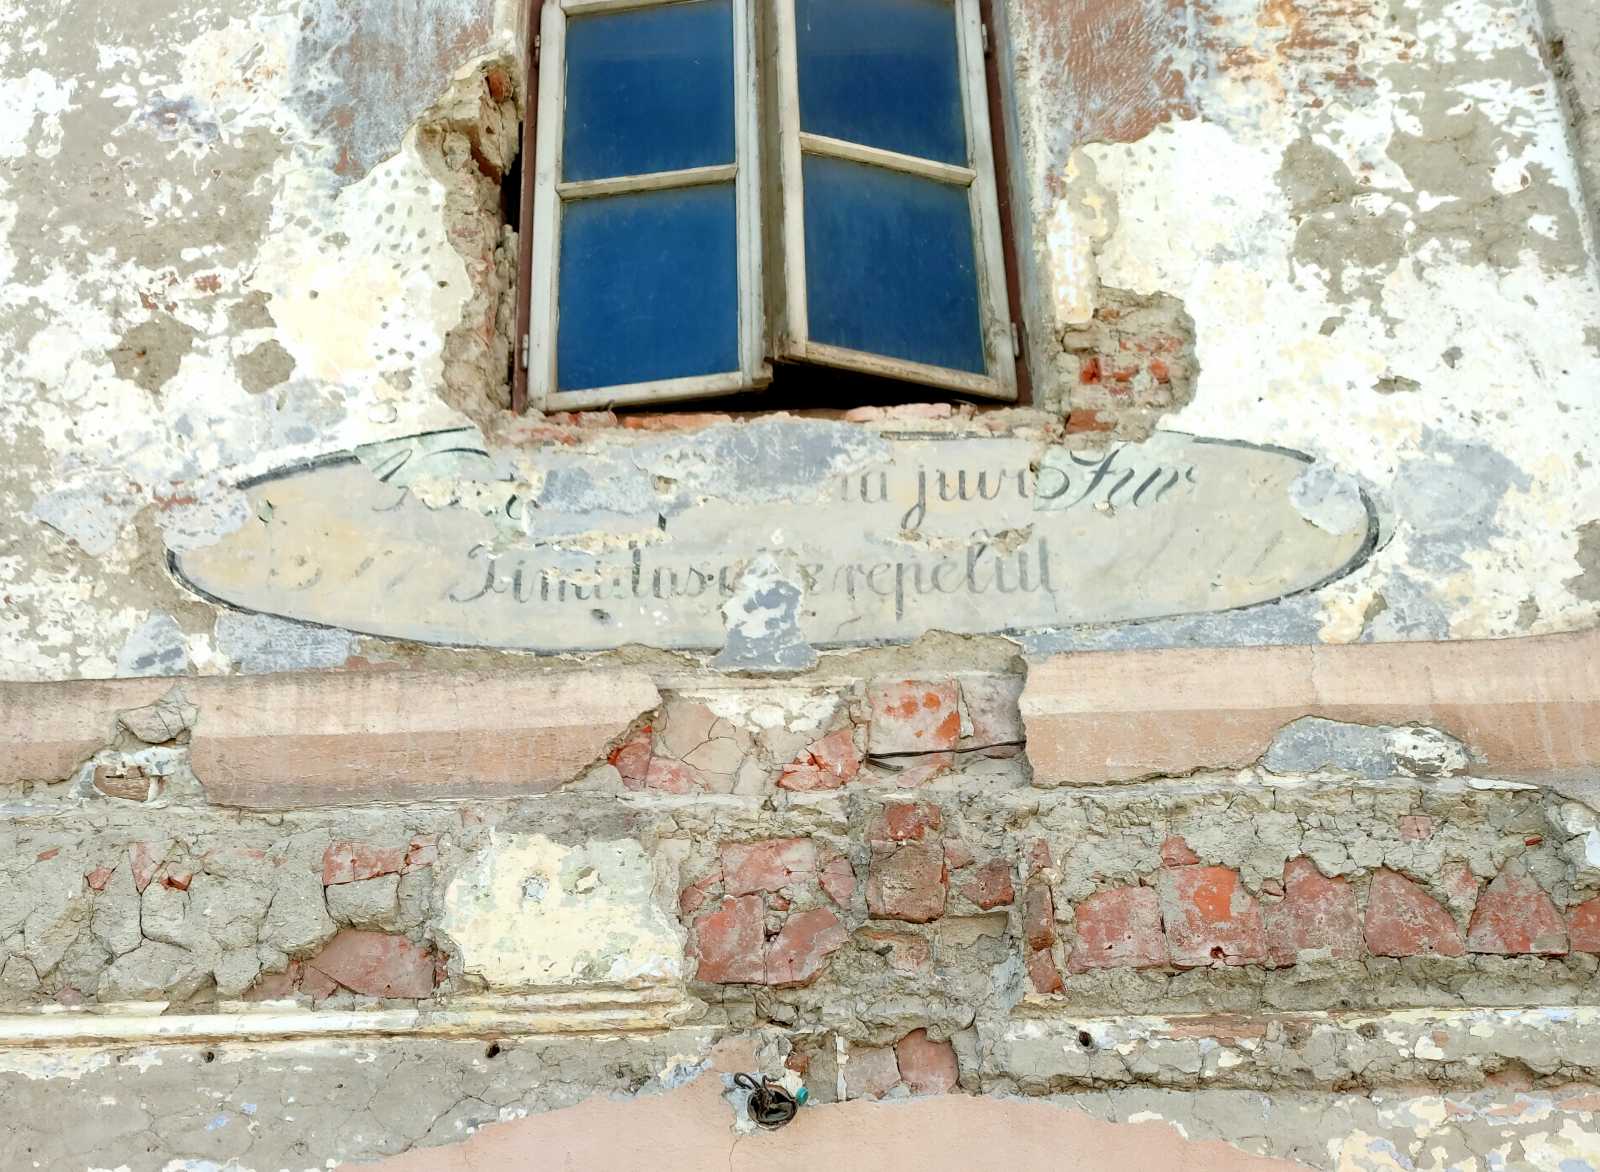 A főbejárat feletti feliraton is látszik, hogy többször átfestették